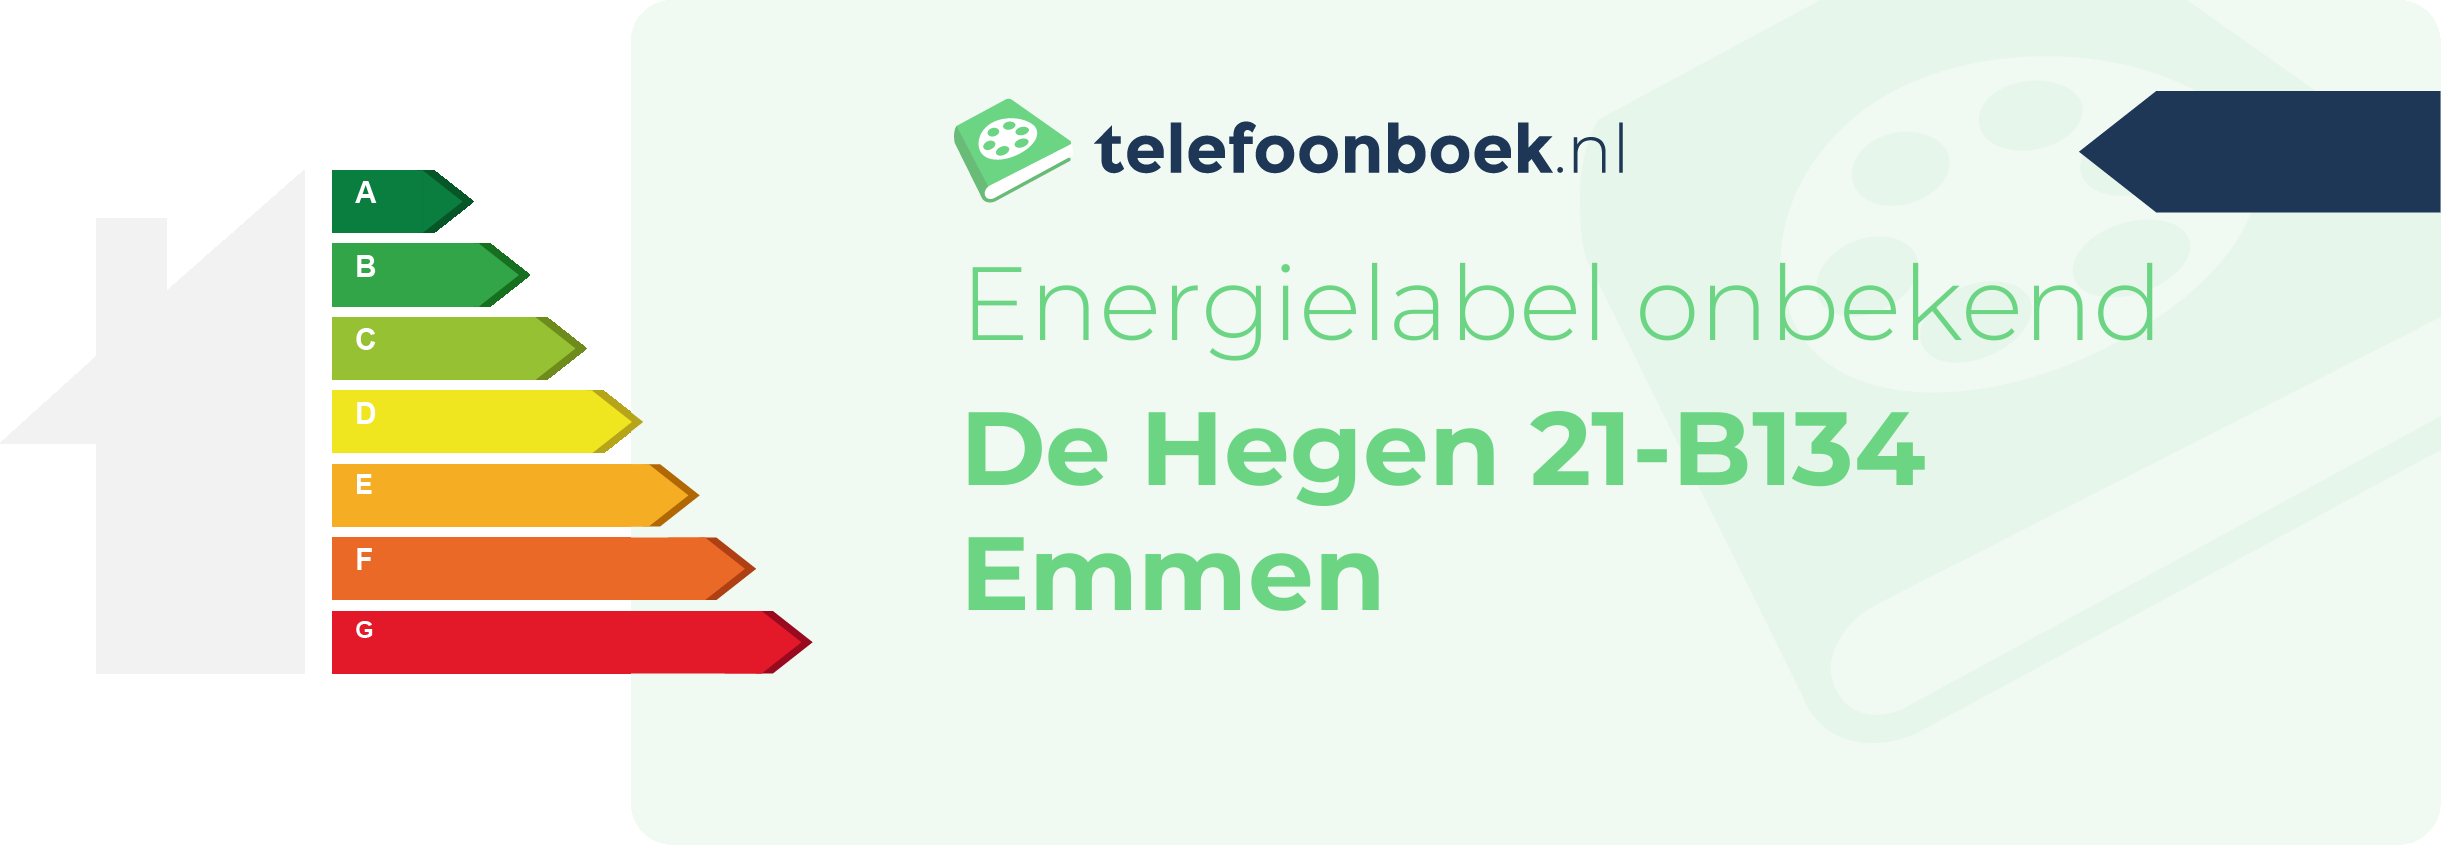 Energielabel De Hegen 21-B134 Emmen